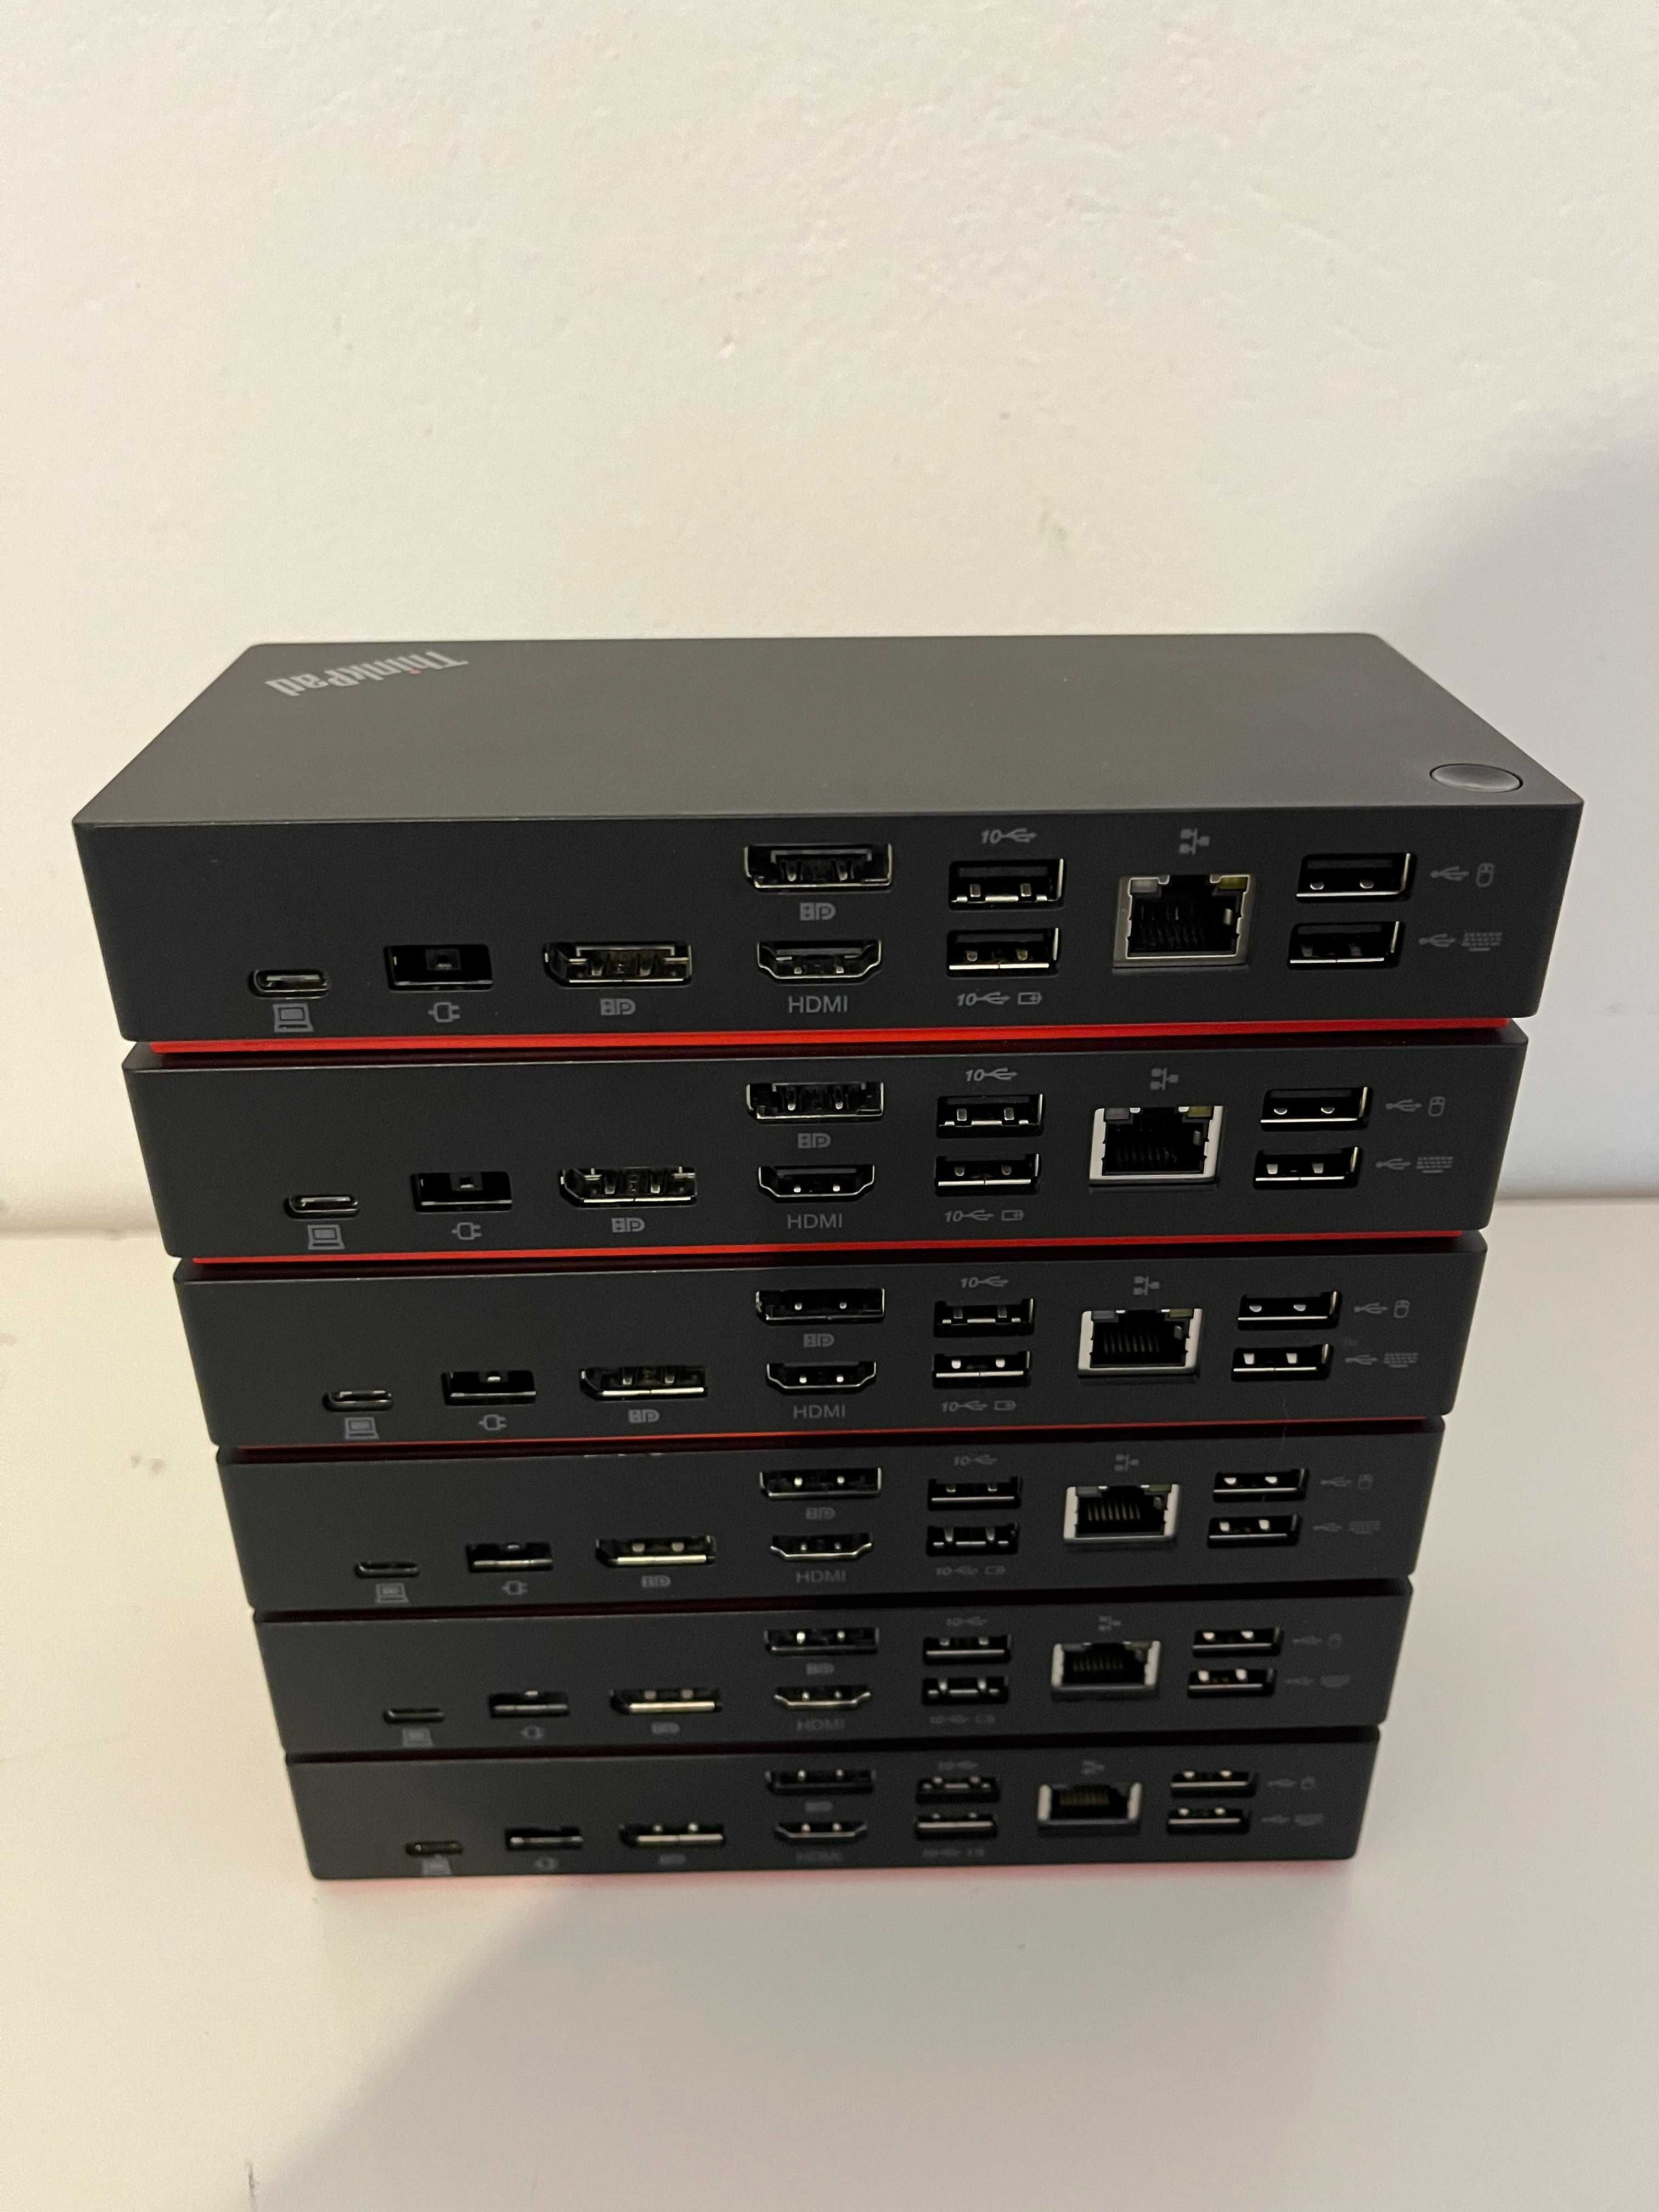 Stacja dokująca Lenovo ThinkPad USB-C Dock Gen2 40AS